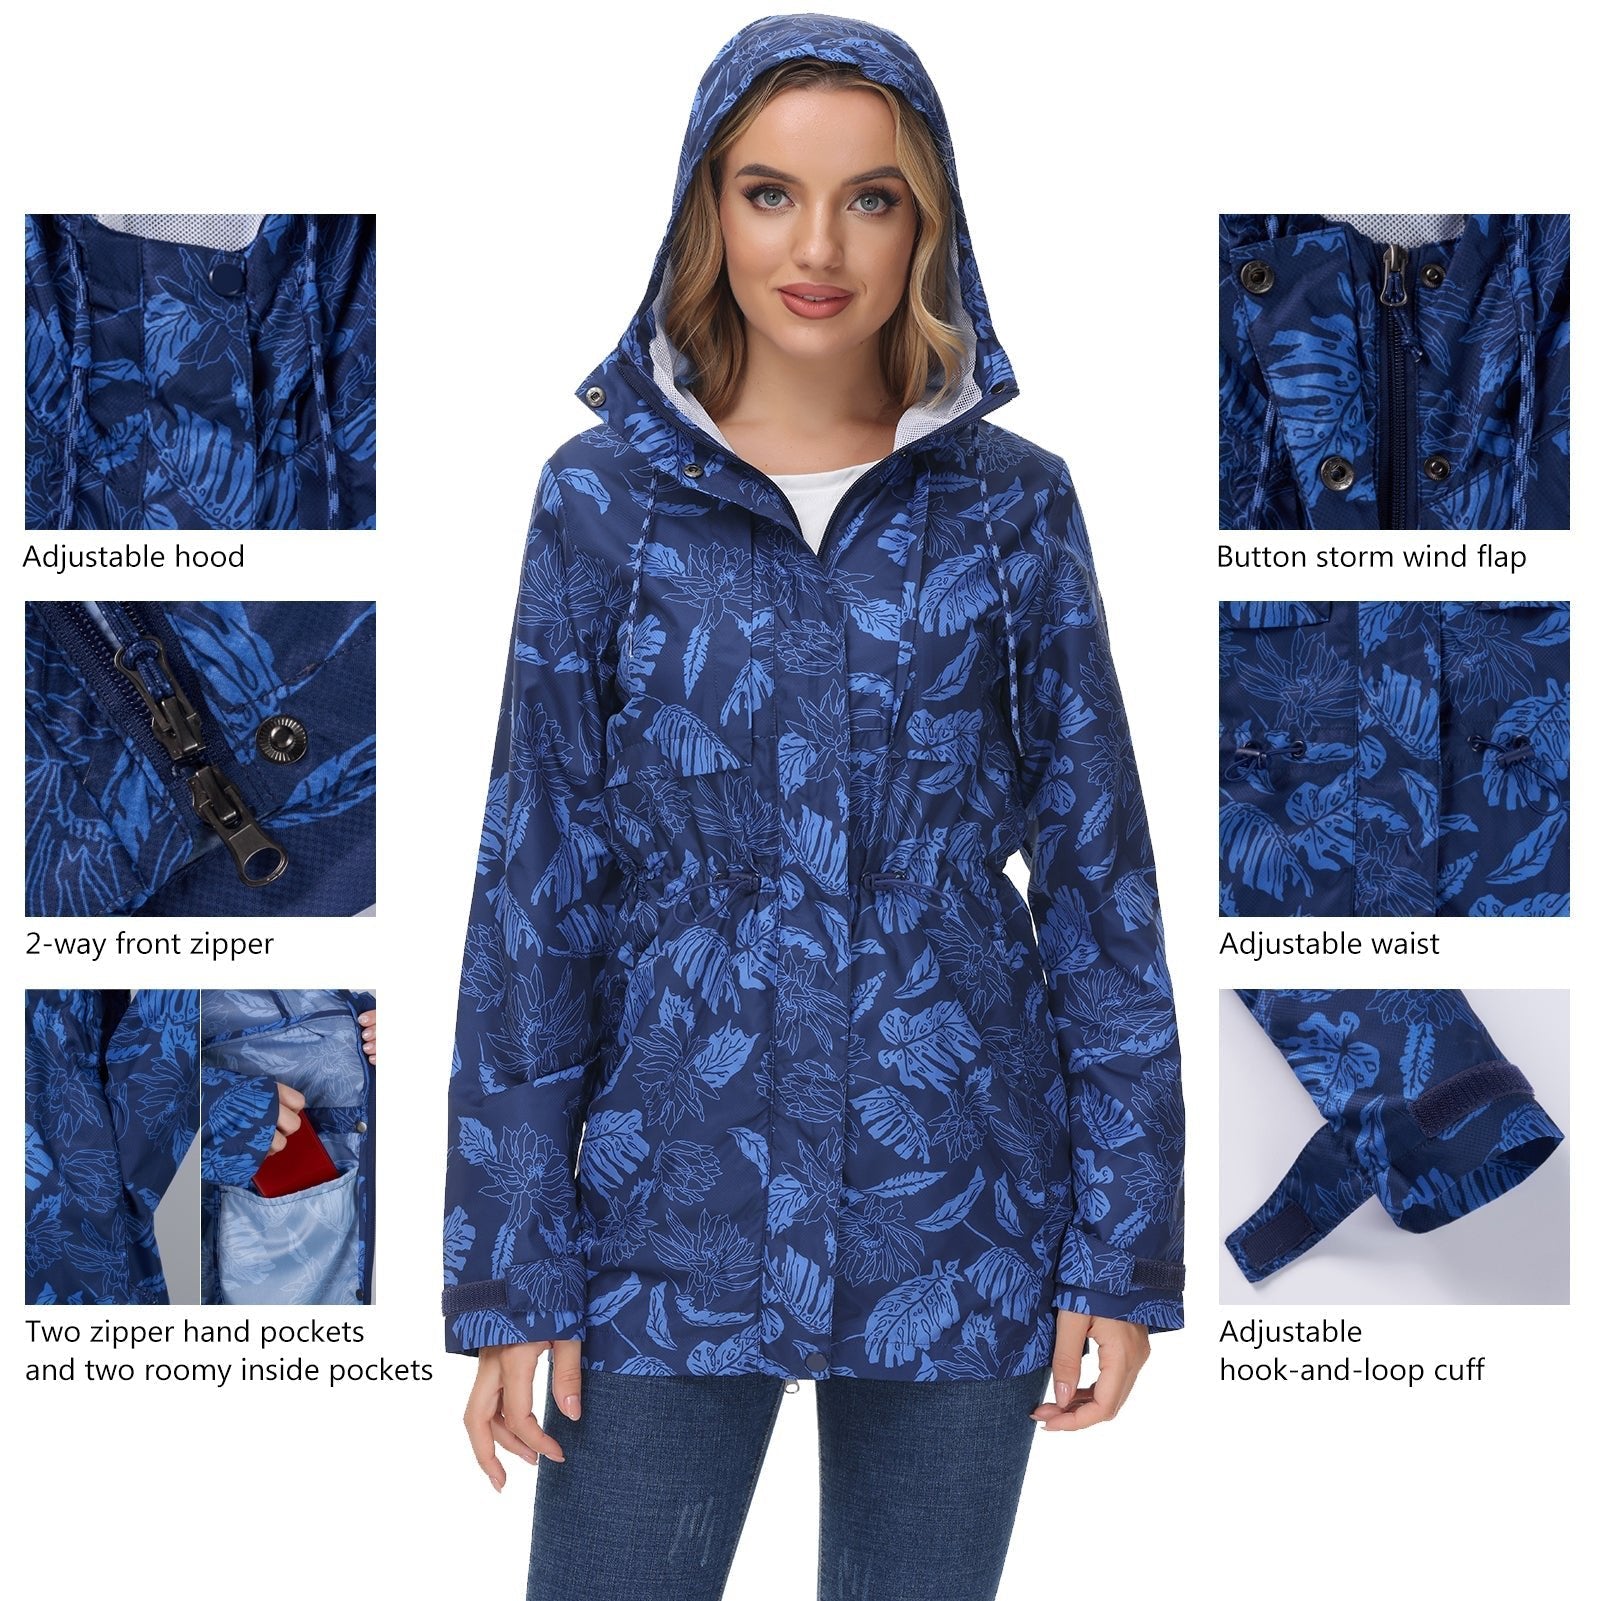 Lightbare Women's Water Resistant Ripstop Rain Coat LB02W - Outland Gear